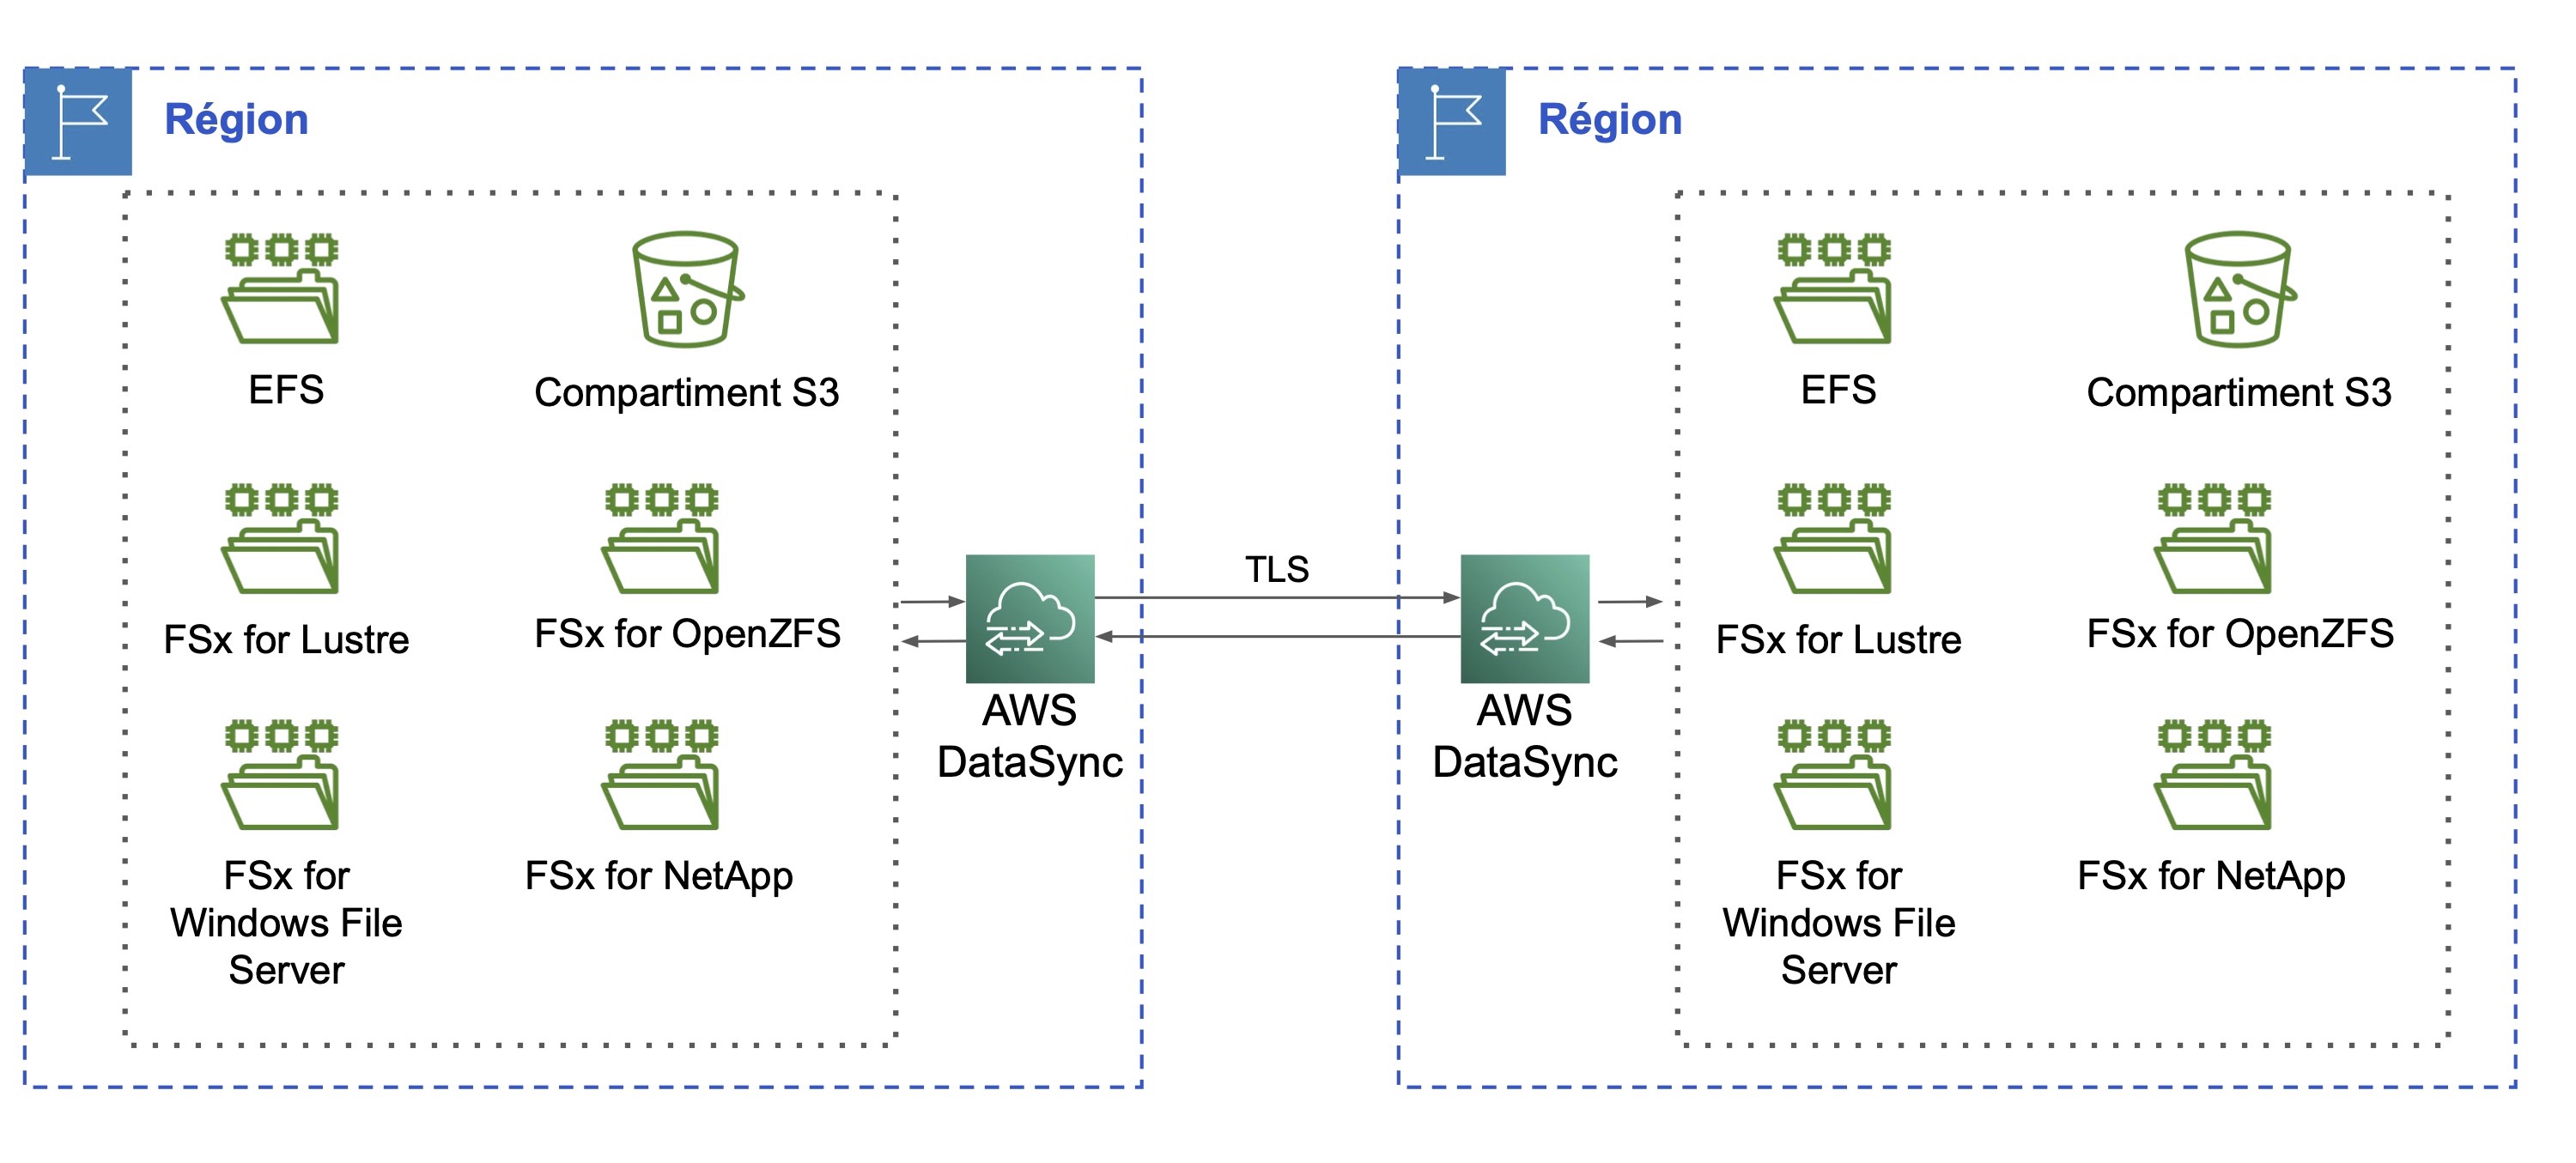 Deux régions interagissent à travers les AWS DataSync correspondantes